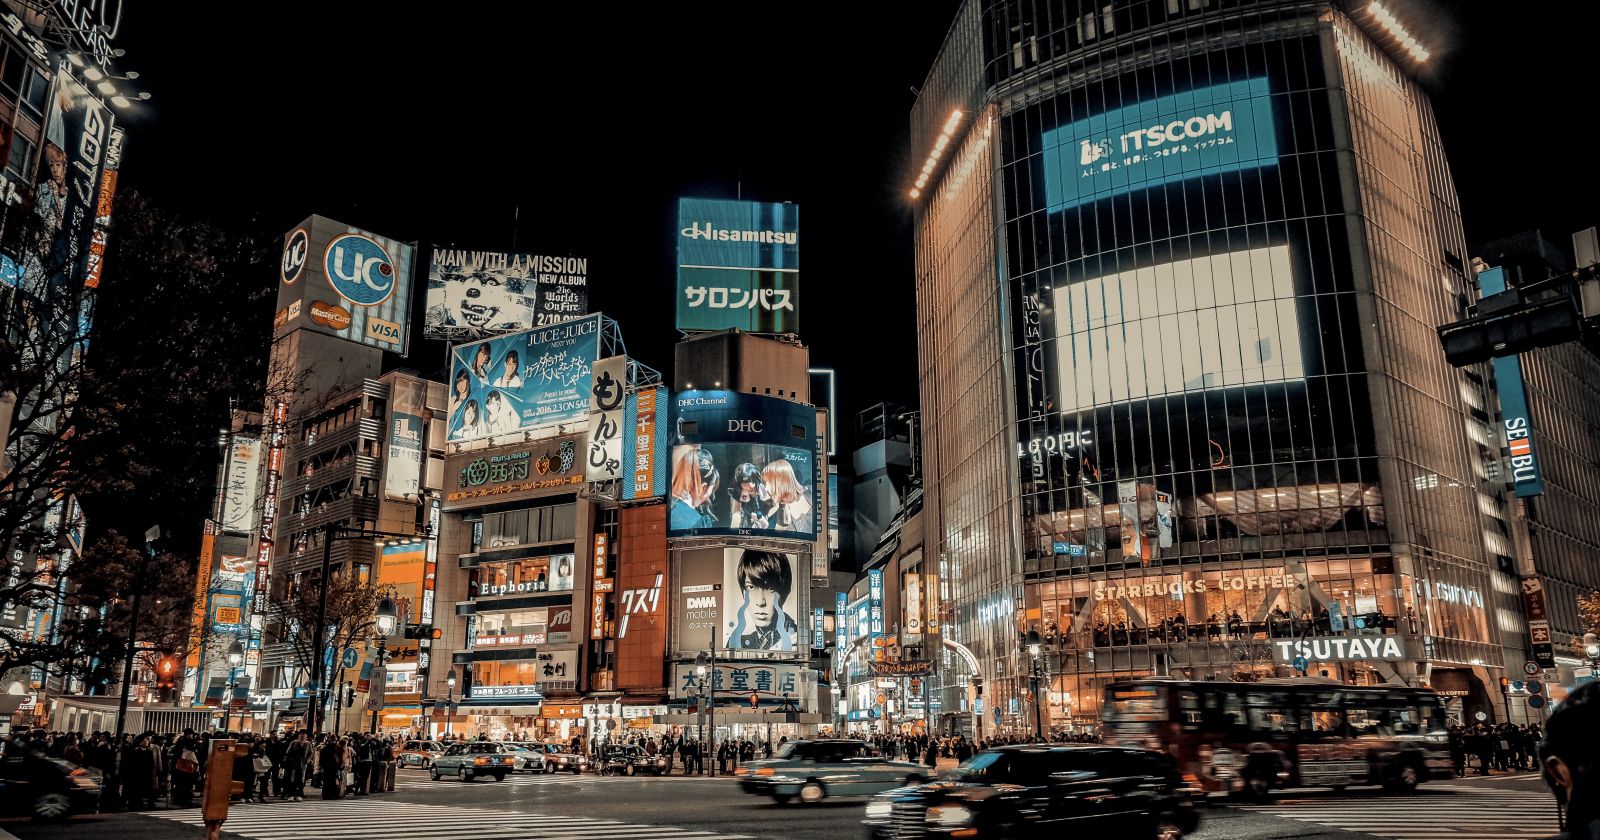 渋谷, 交差点, 街並み, 屋外, 建物, 東京, 渋谷交差点, 日本, 通り, アジア, 看板, 広告